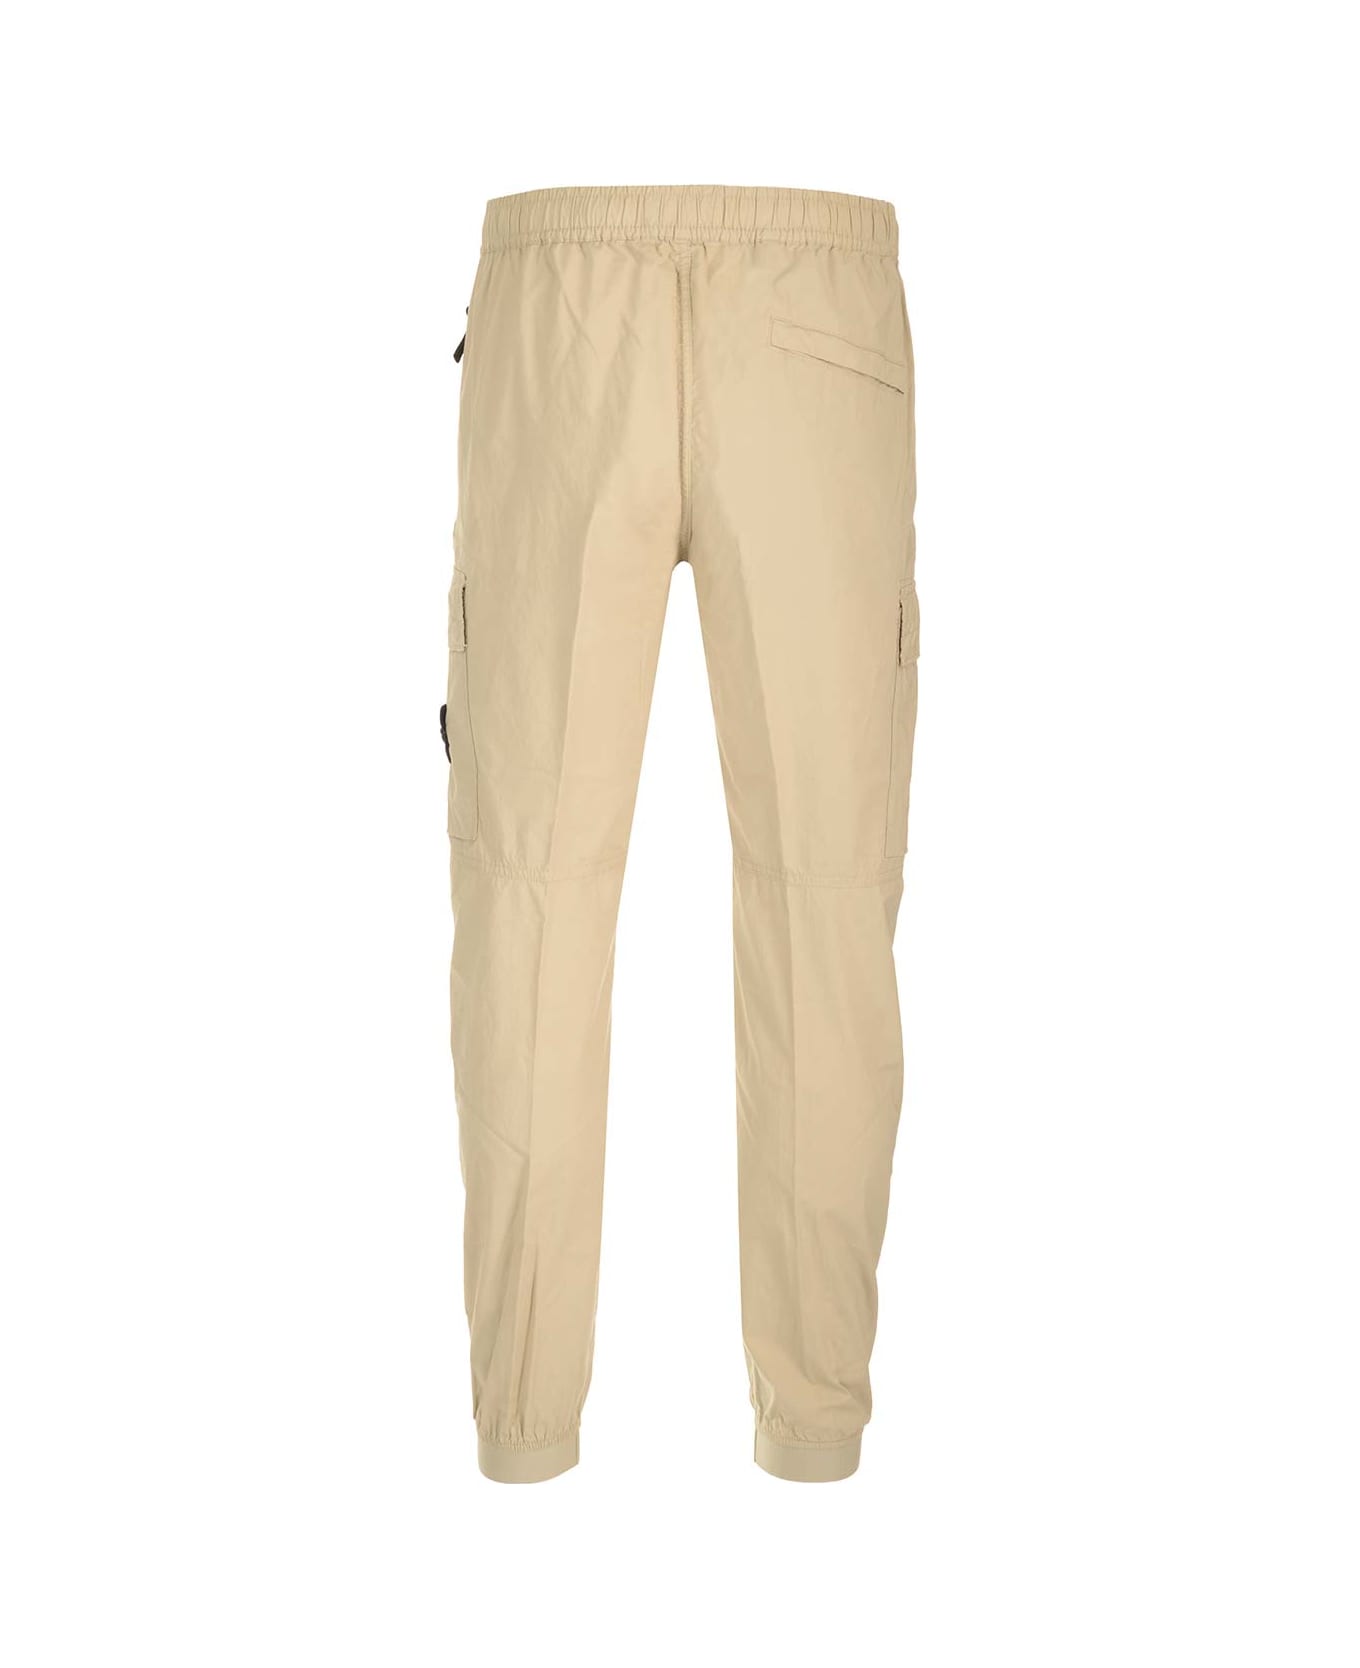 Stone Island Cotton Cargo-trousers - Nude & Neutrals スウェットパンツ